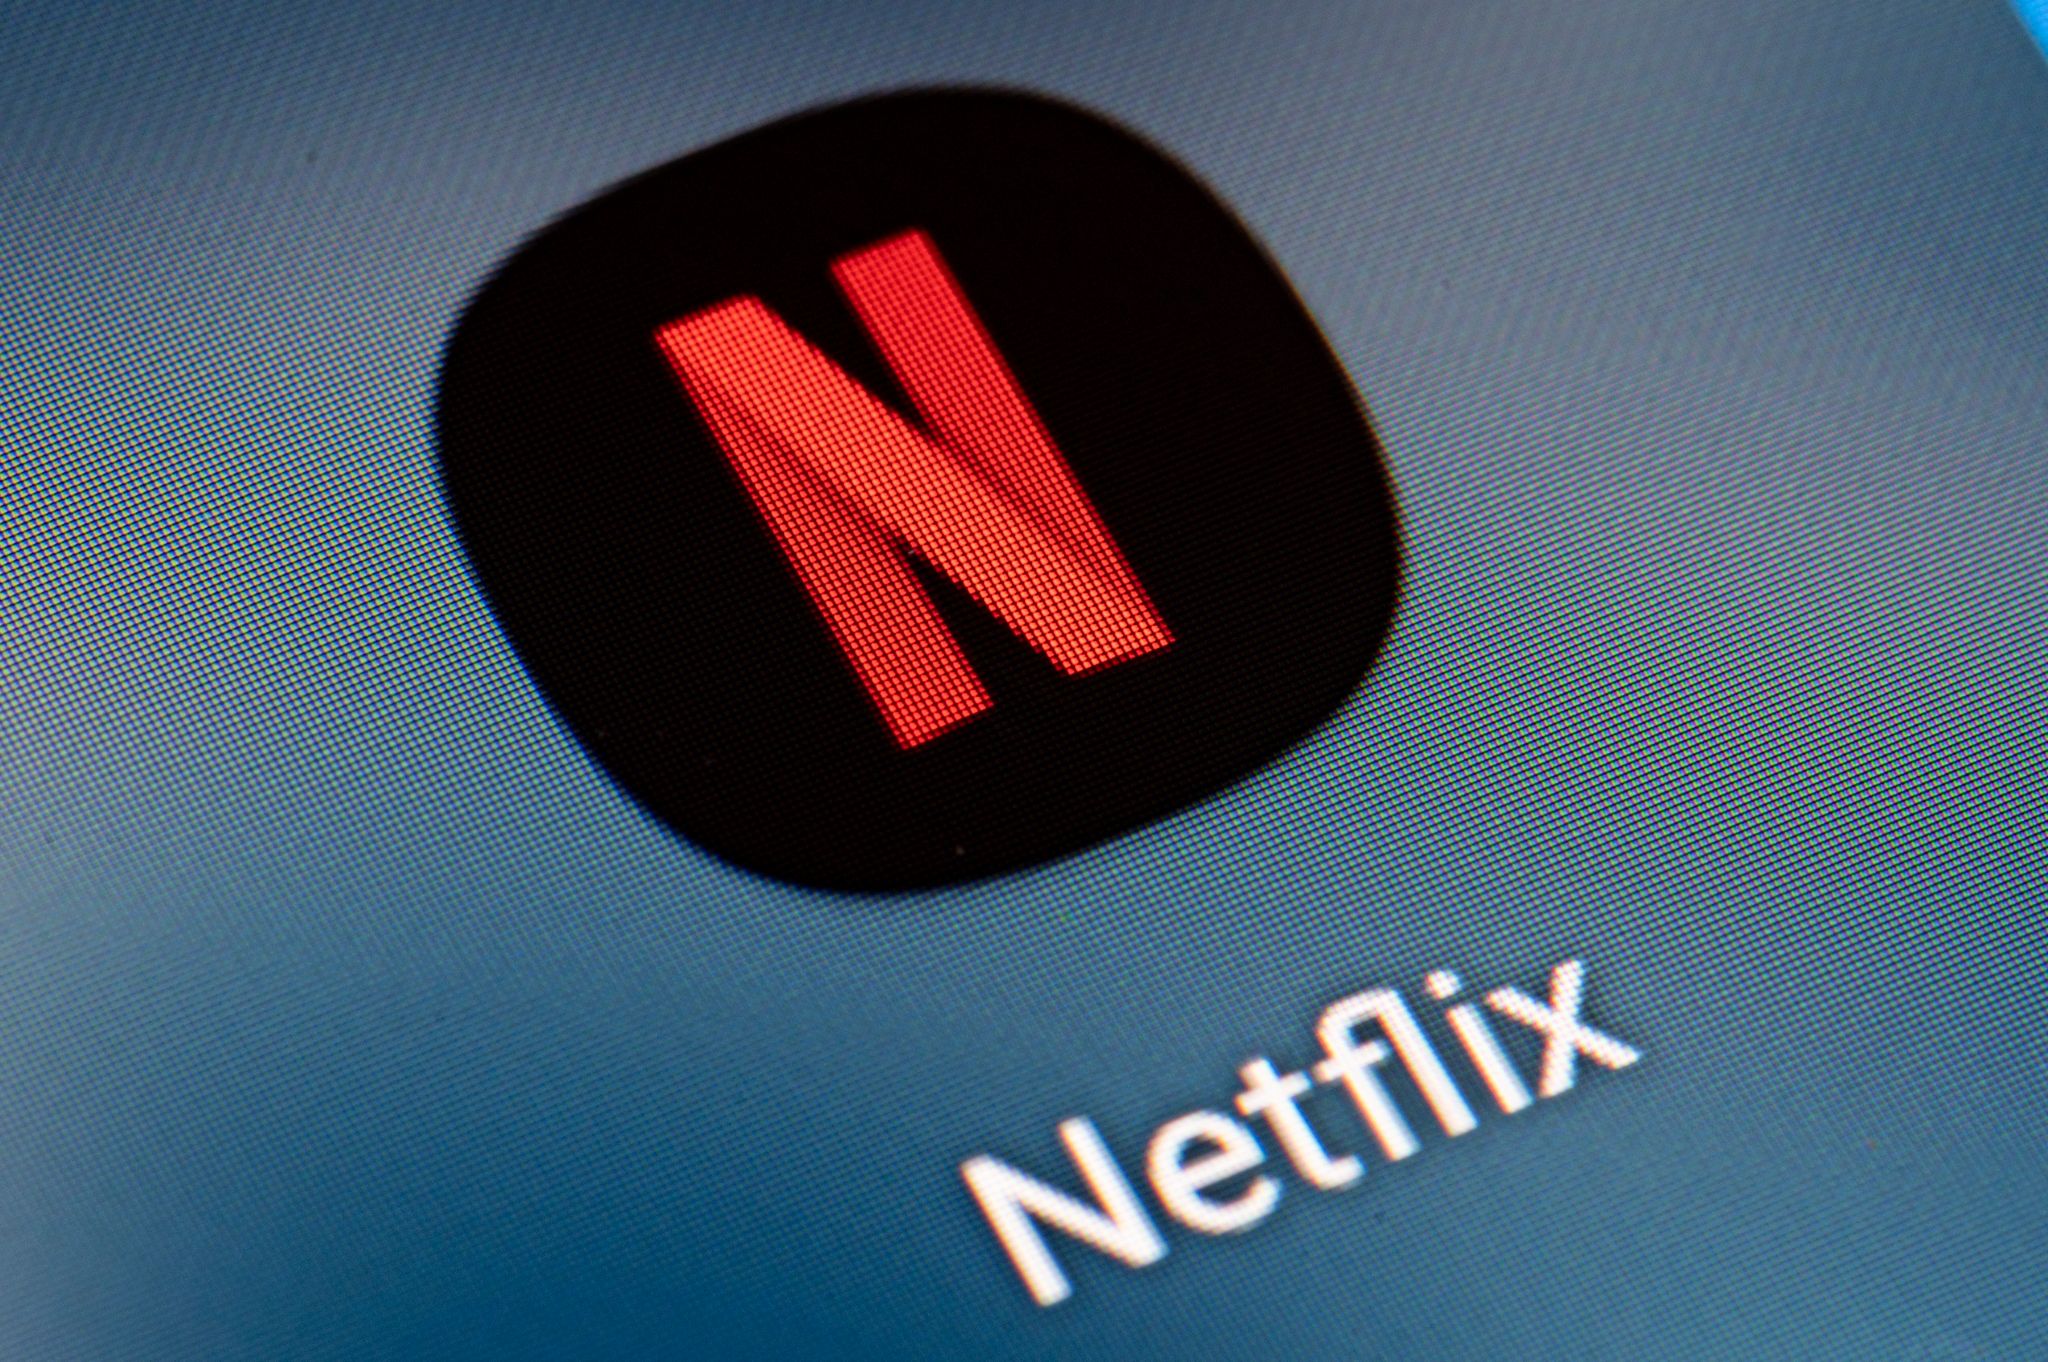 Netflix will Erlebnis-Standorte schaffen. Dort sollen dann zum Beispiel Fanartikel verkauft werden.